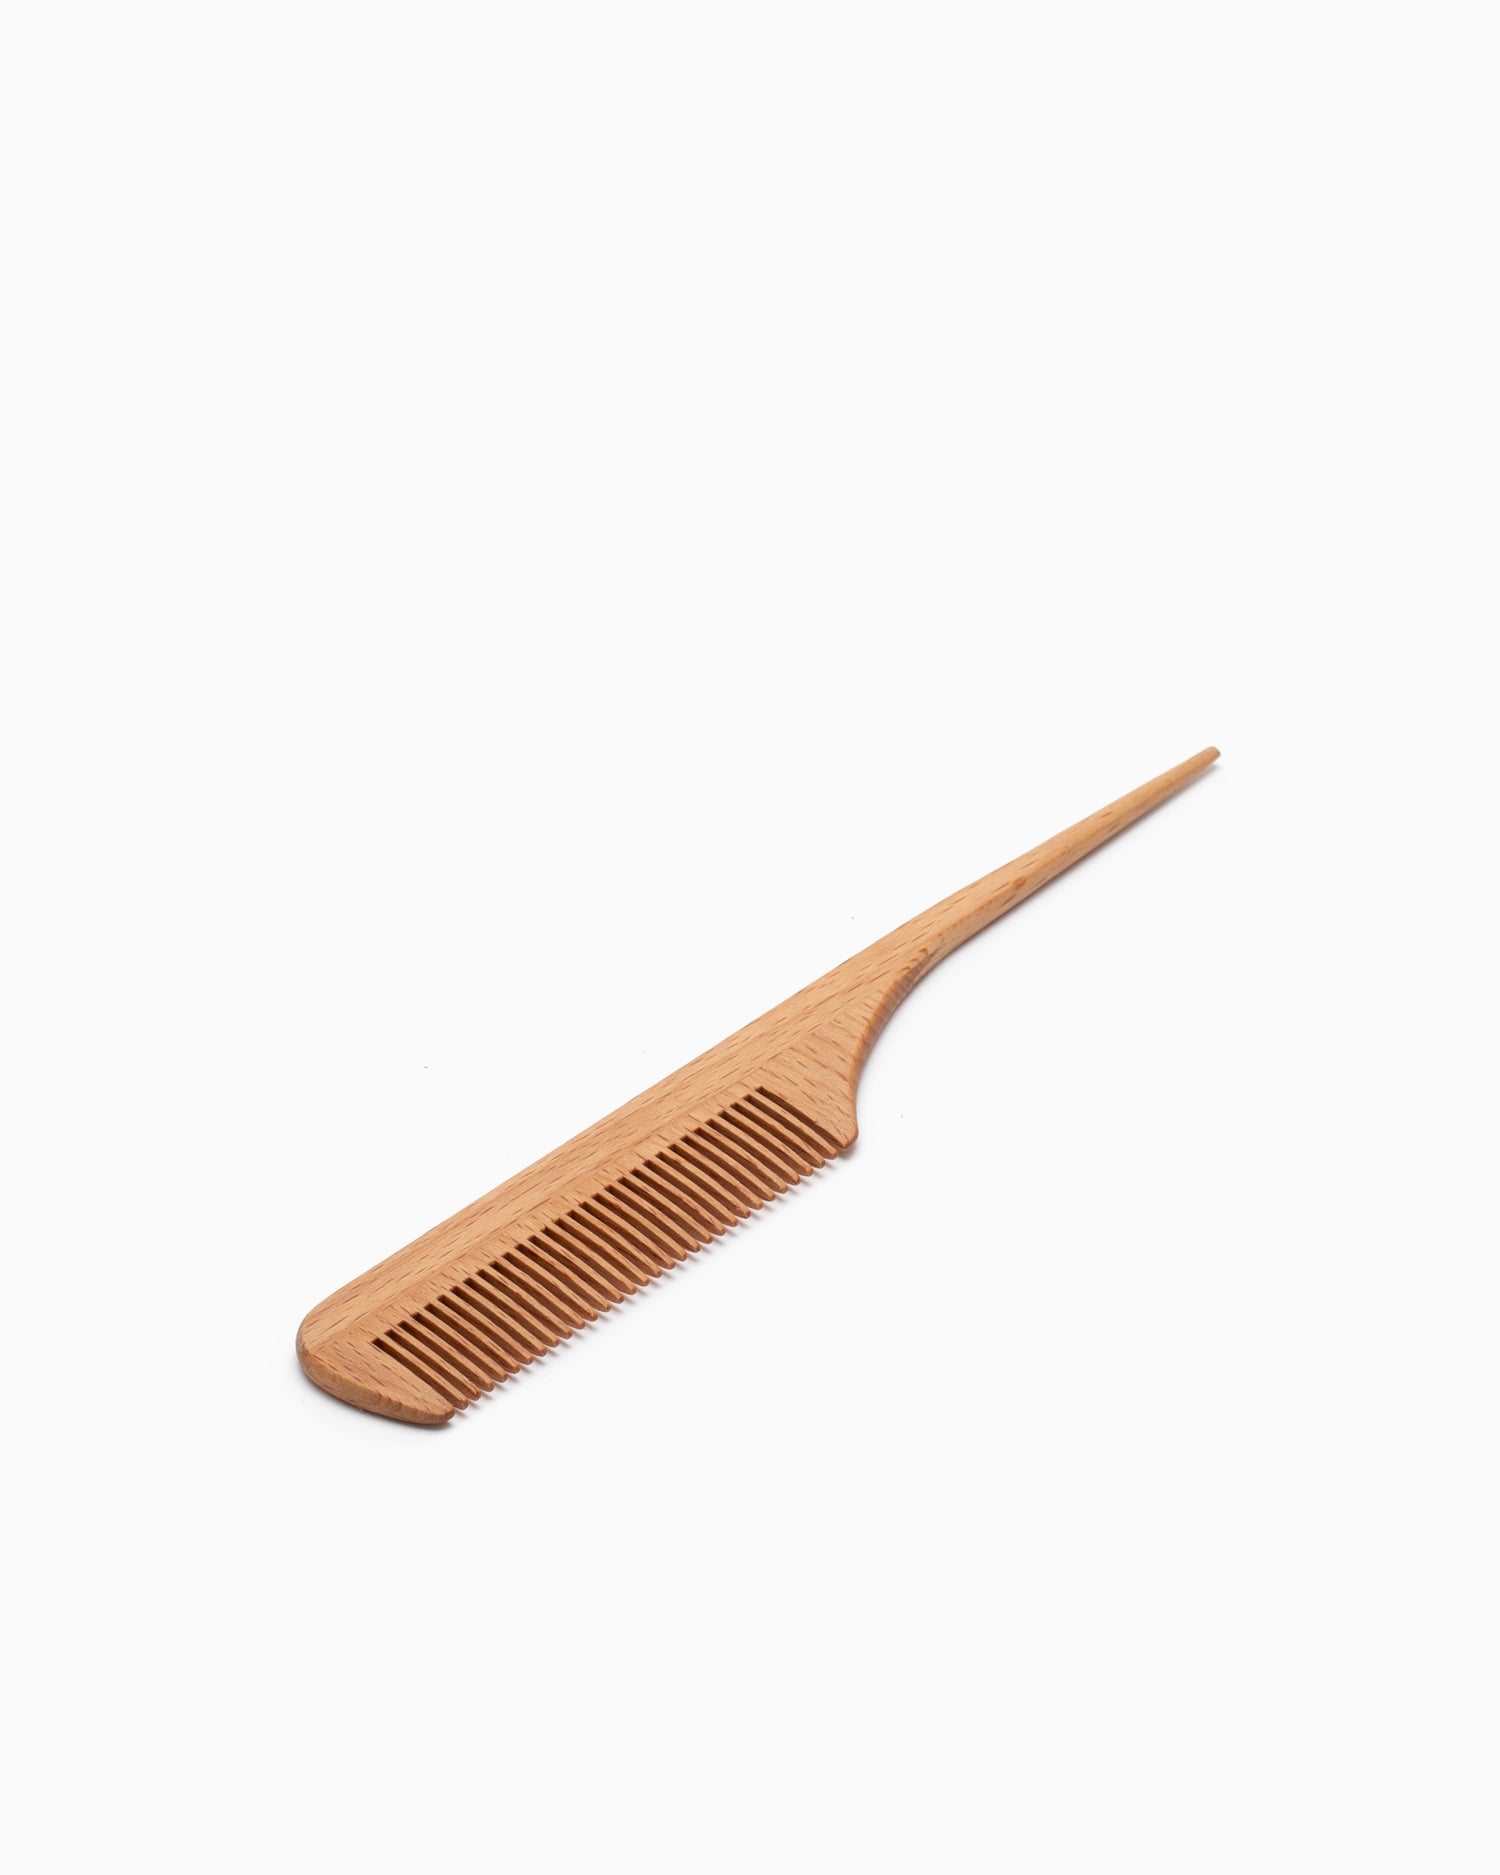 Wooden Chopsticks - Prune